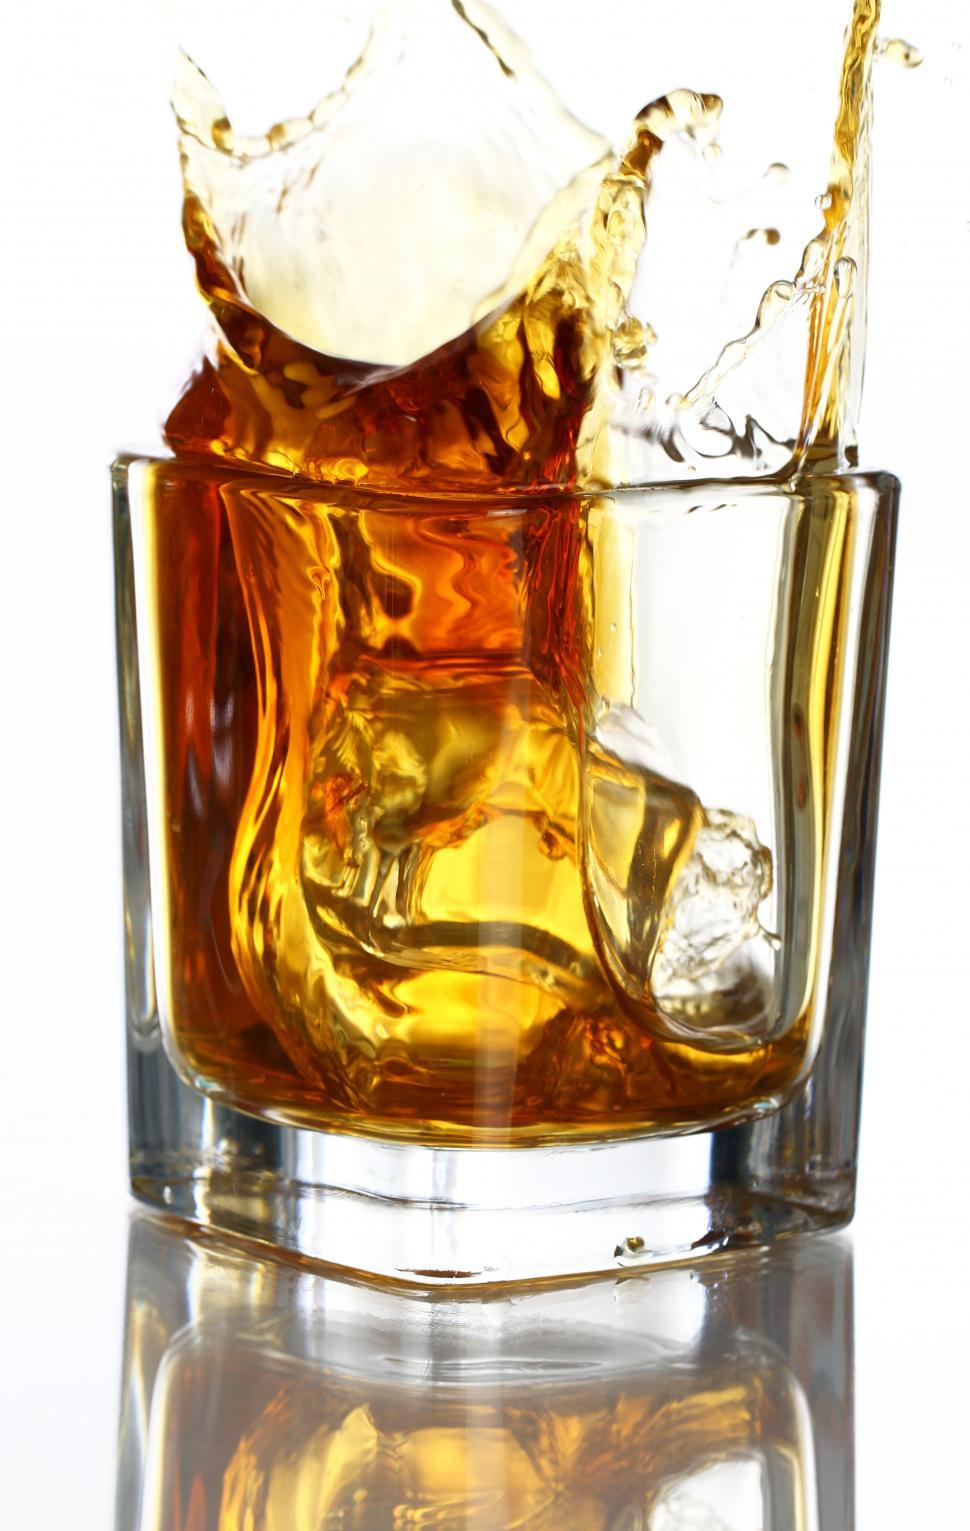 Free Image of Splashes of whiskey 